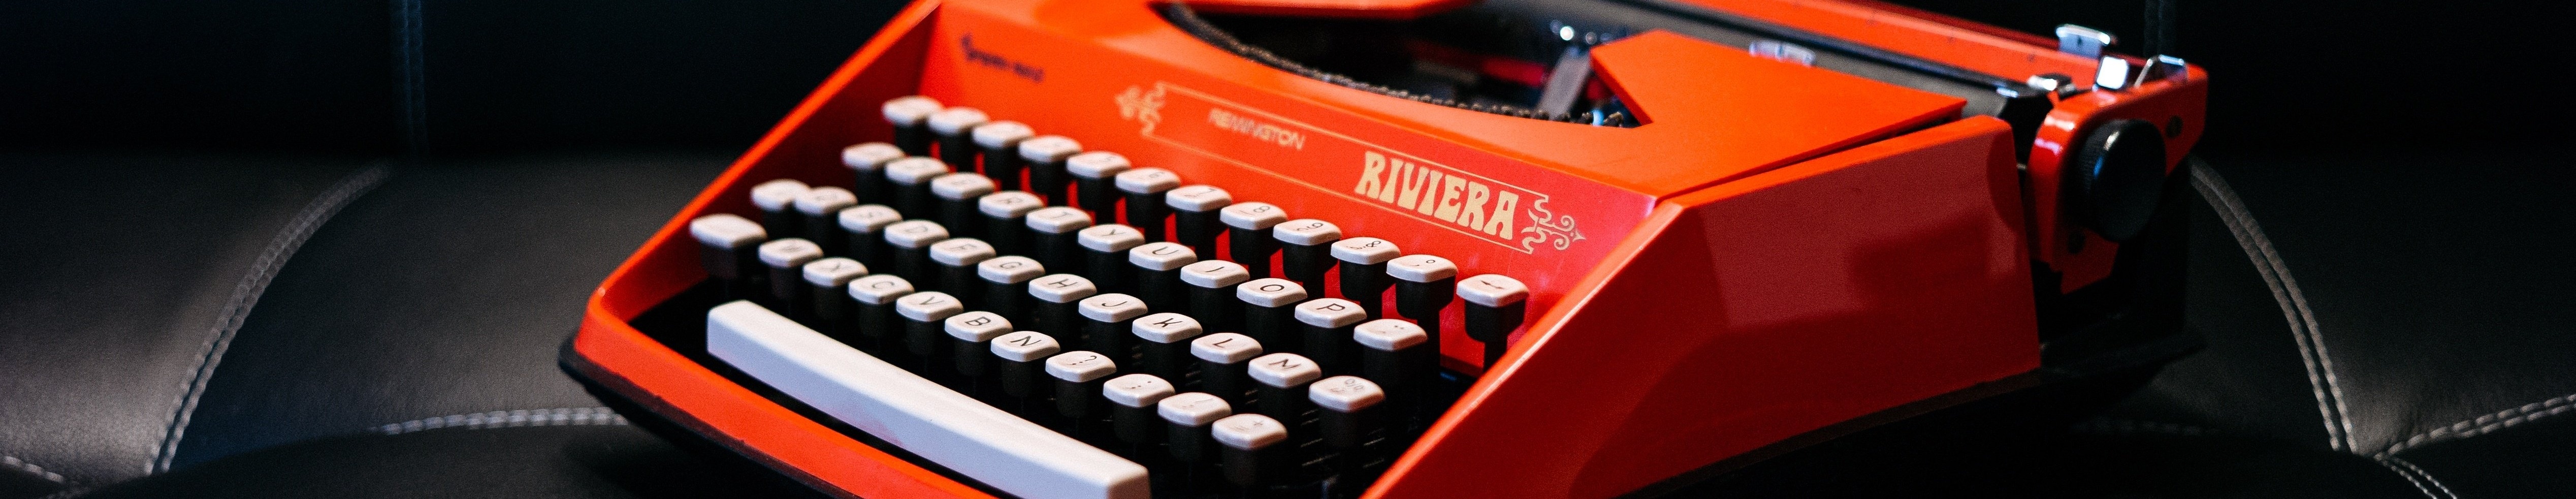 Red_Typewriter.jpg